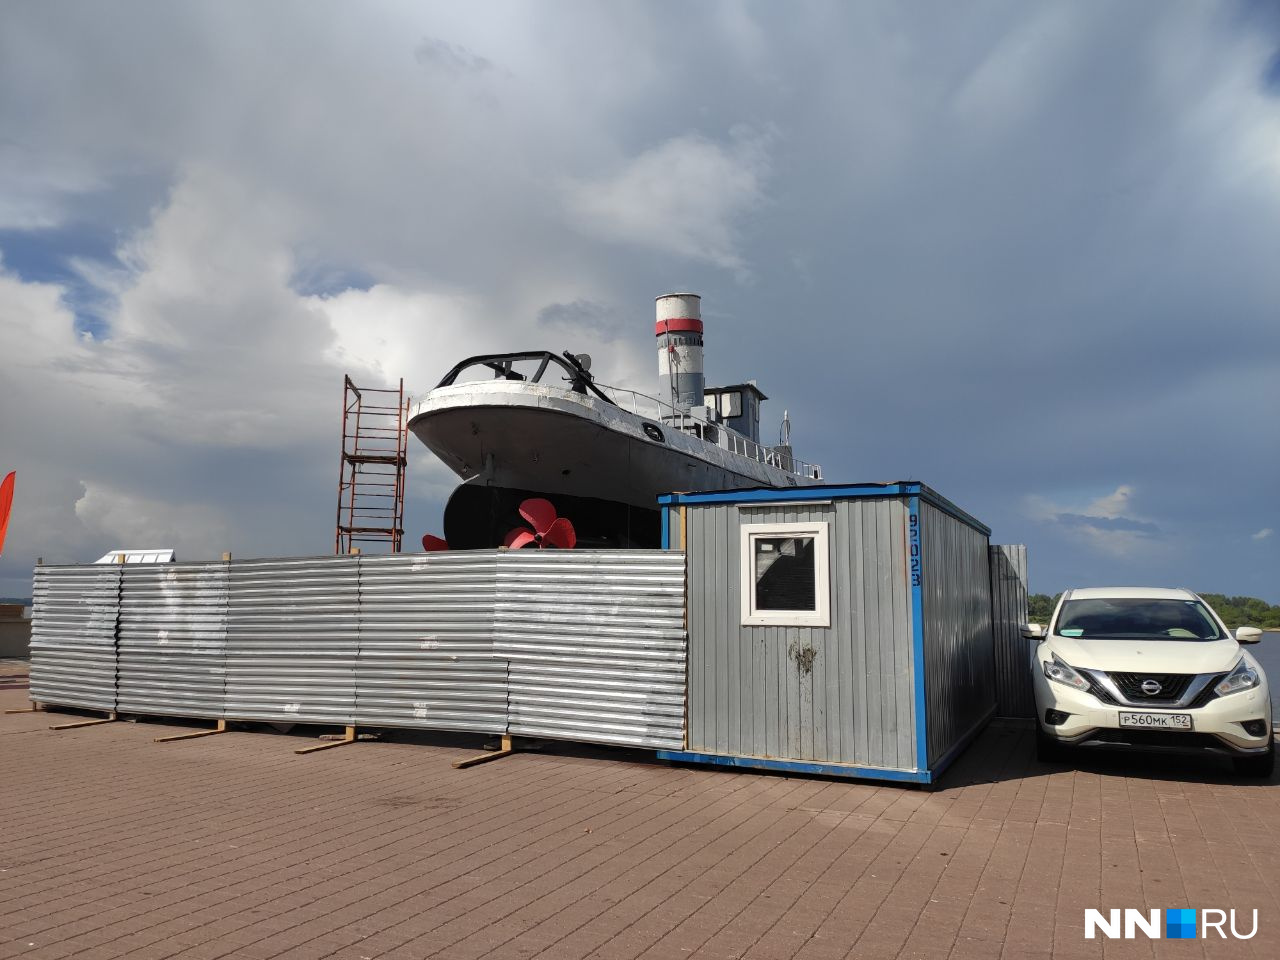 Катер «Герой» на Нижне-Волжской набережной отремонтируют за 9 млн рублей